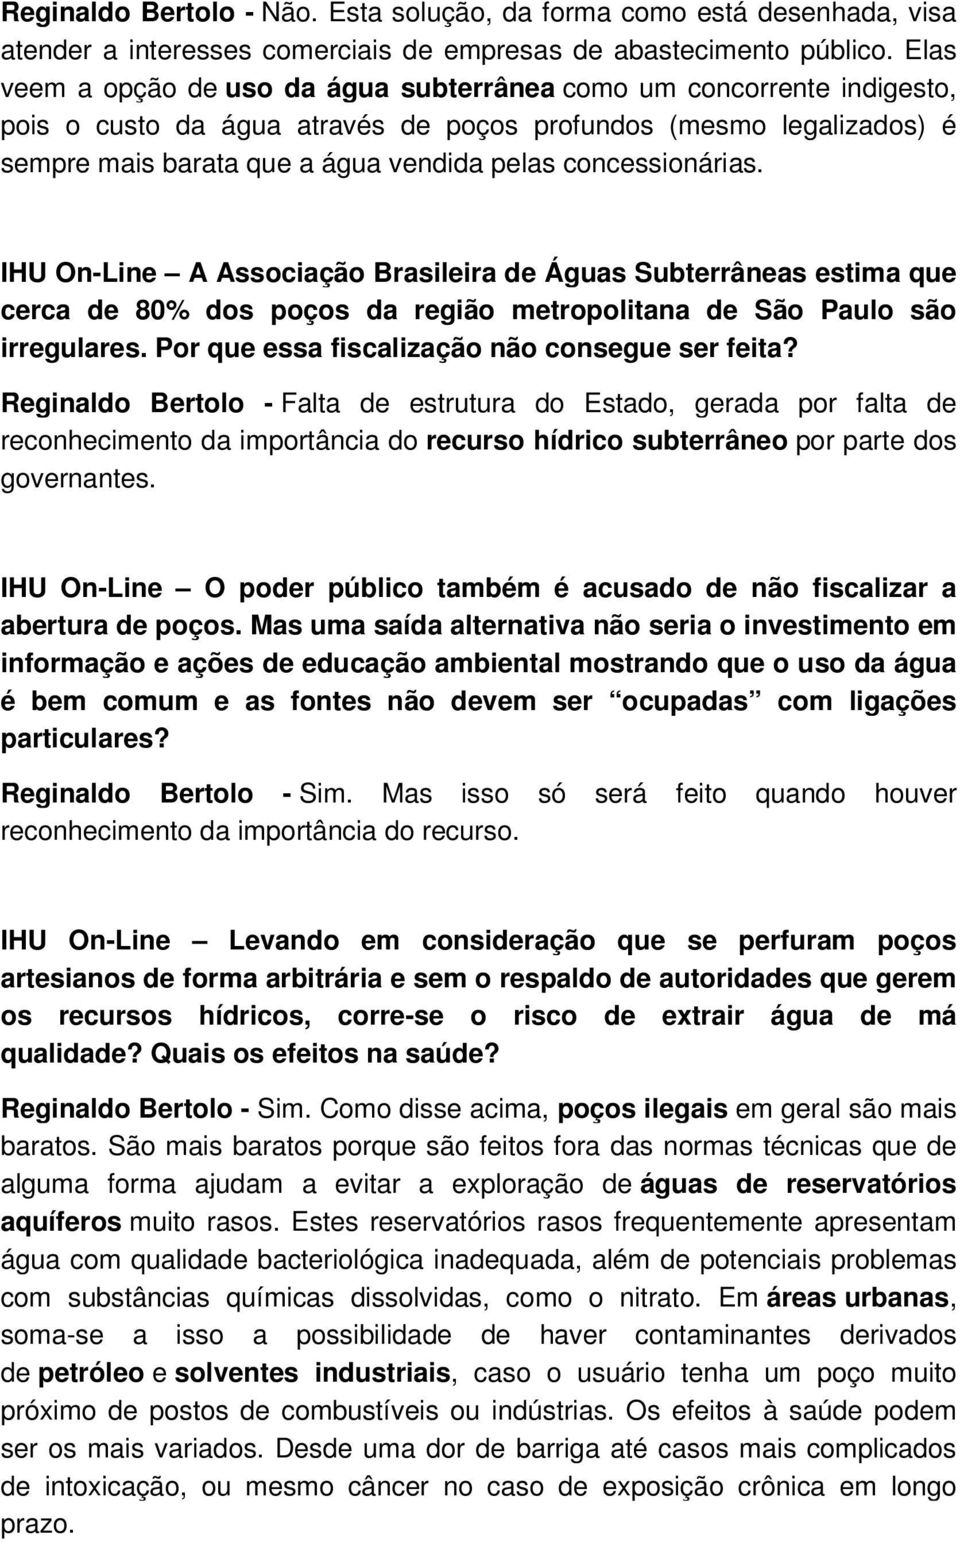 concessionárias. IHU On-Line A Associação Brasileira de Águas Subterrâneas estima que cerca de 80% dos poços da região metropolitana de São Paulo são irregulares.